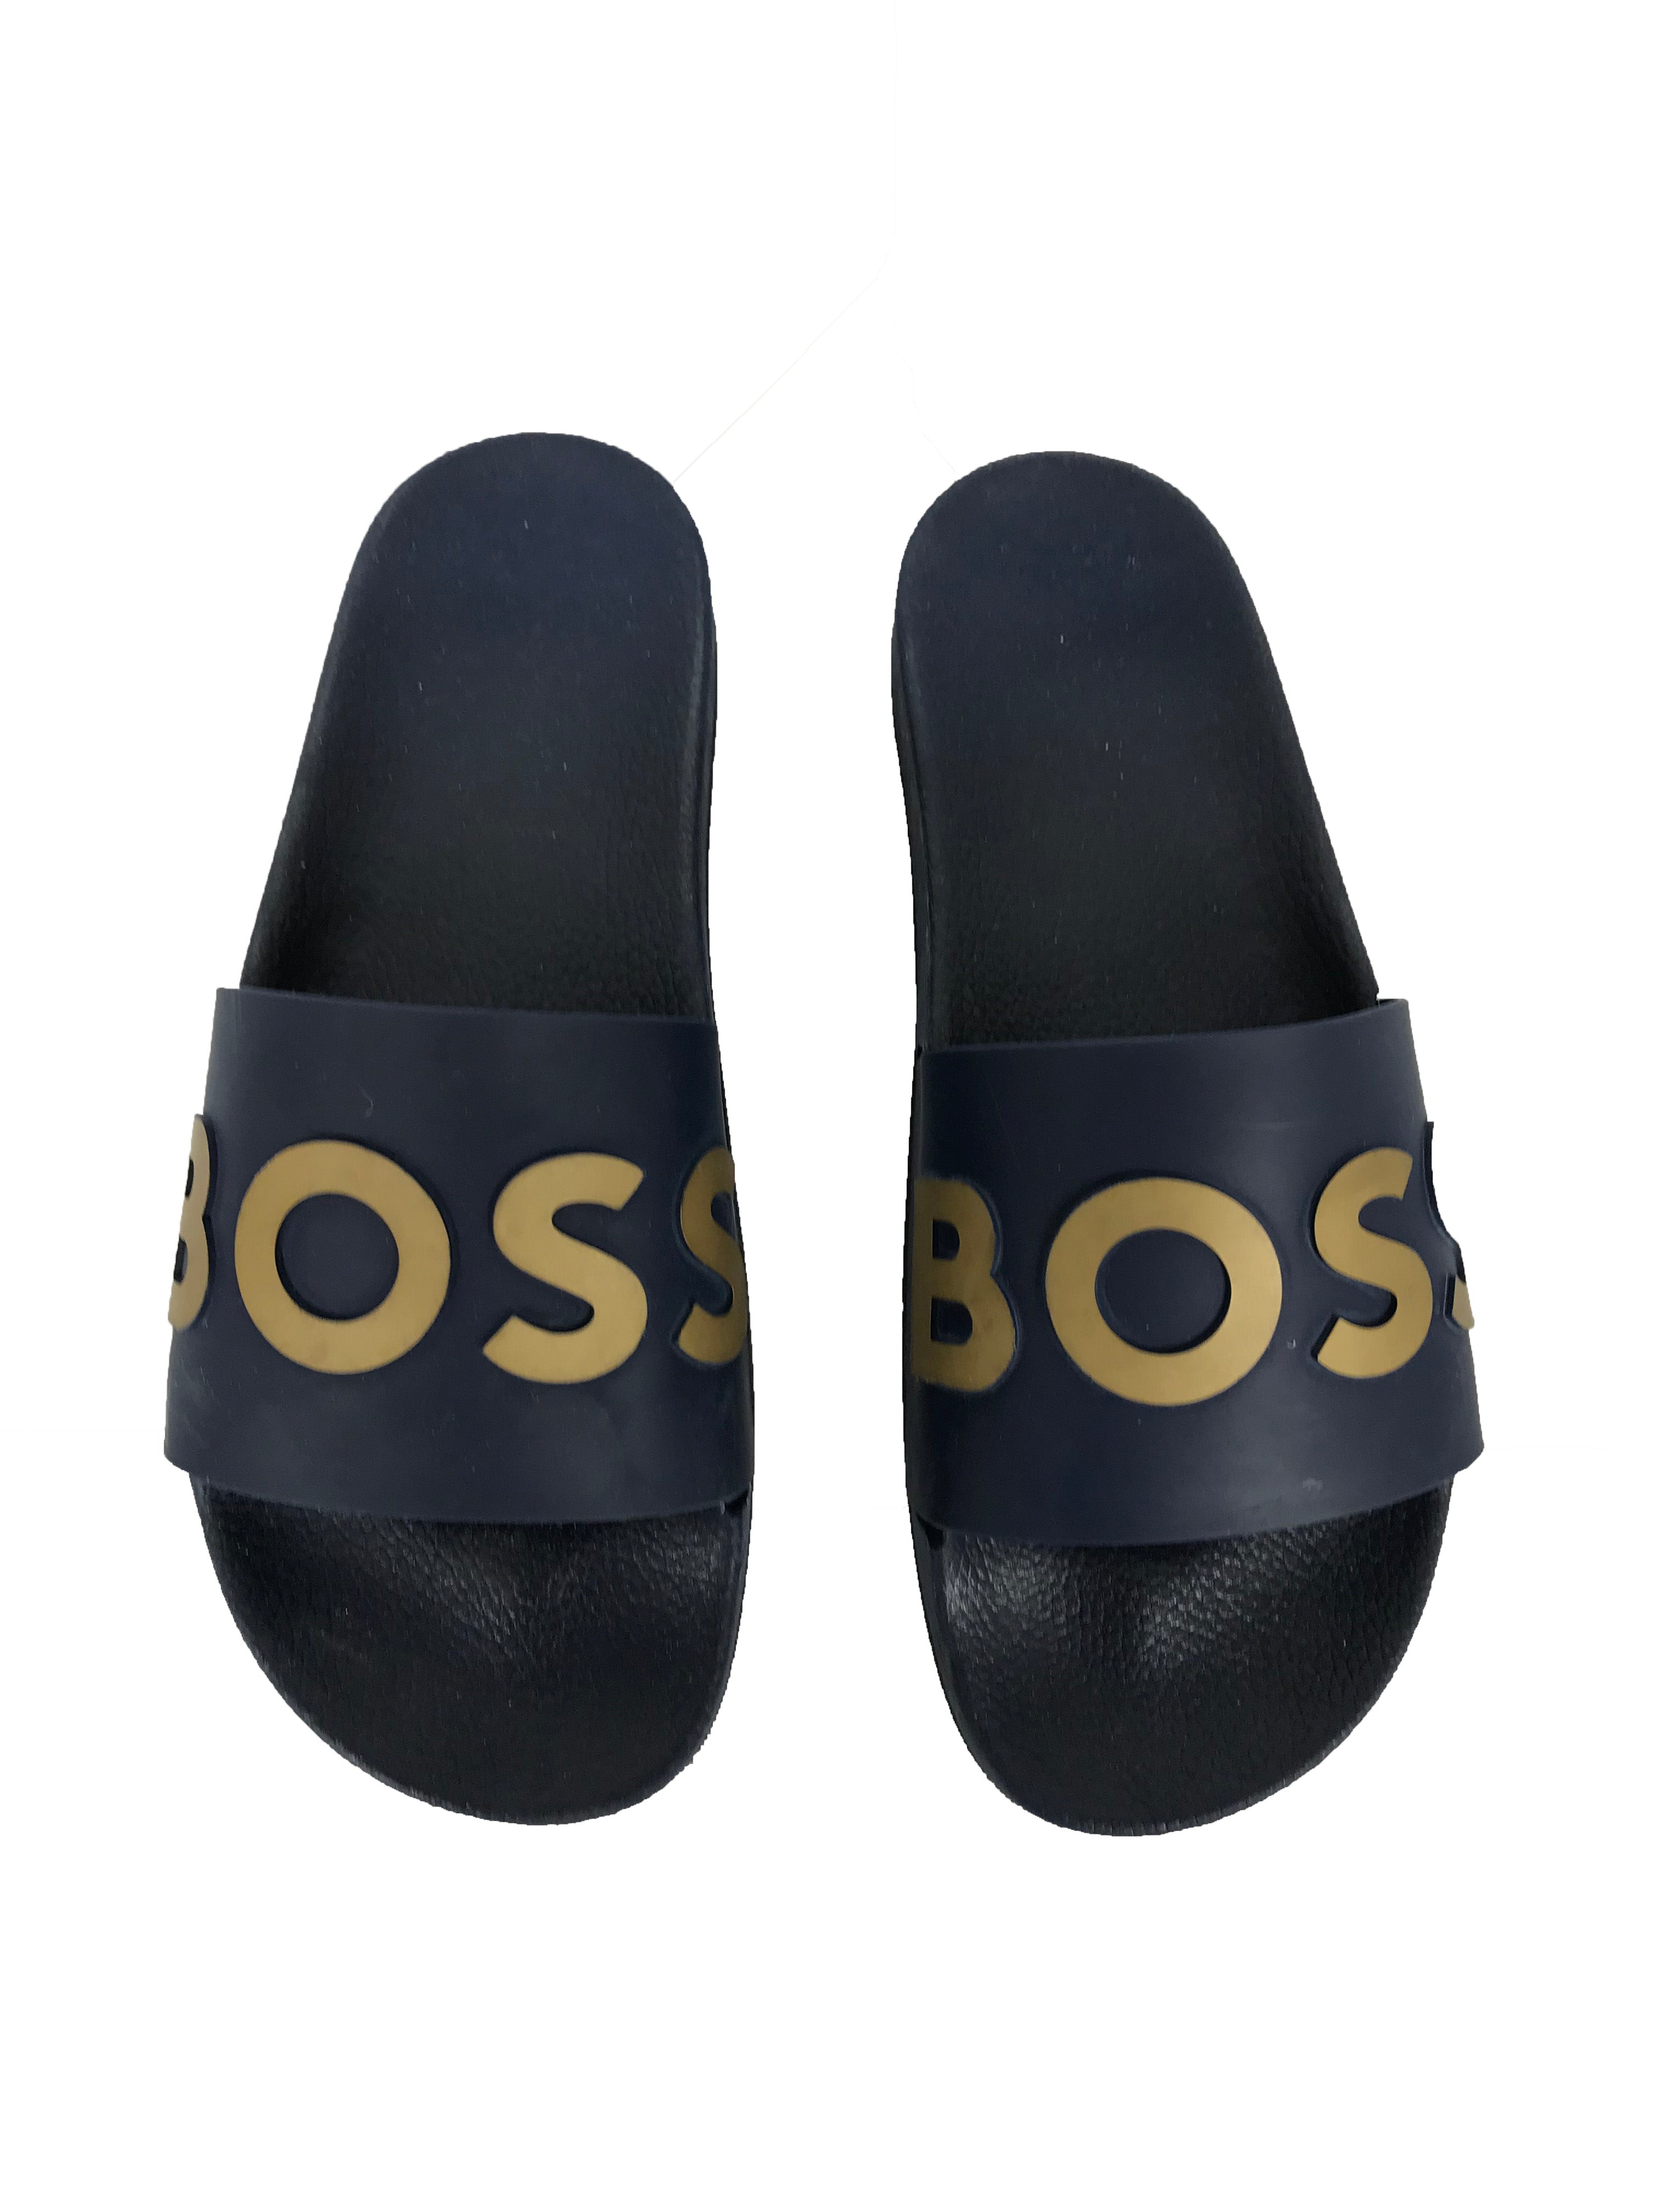 Boss by Hugo Boss Blue Slide Sandals Men's Size 44